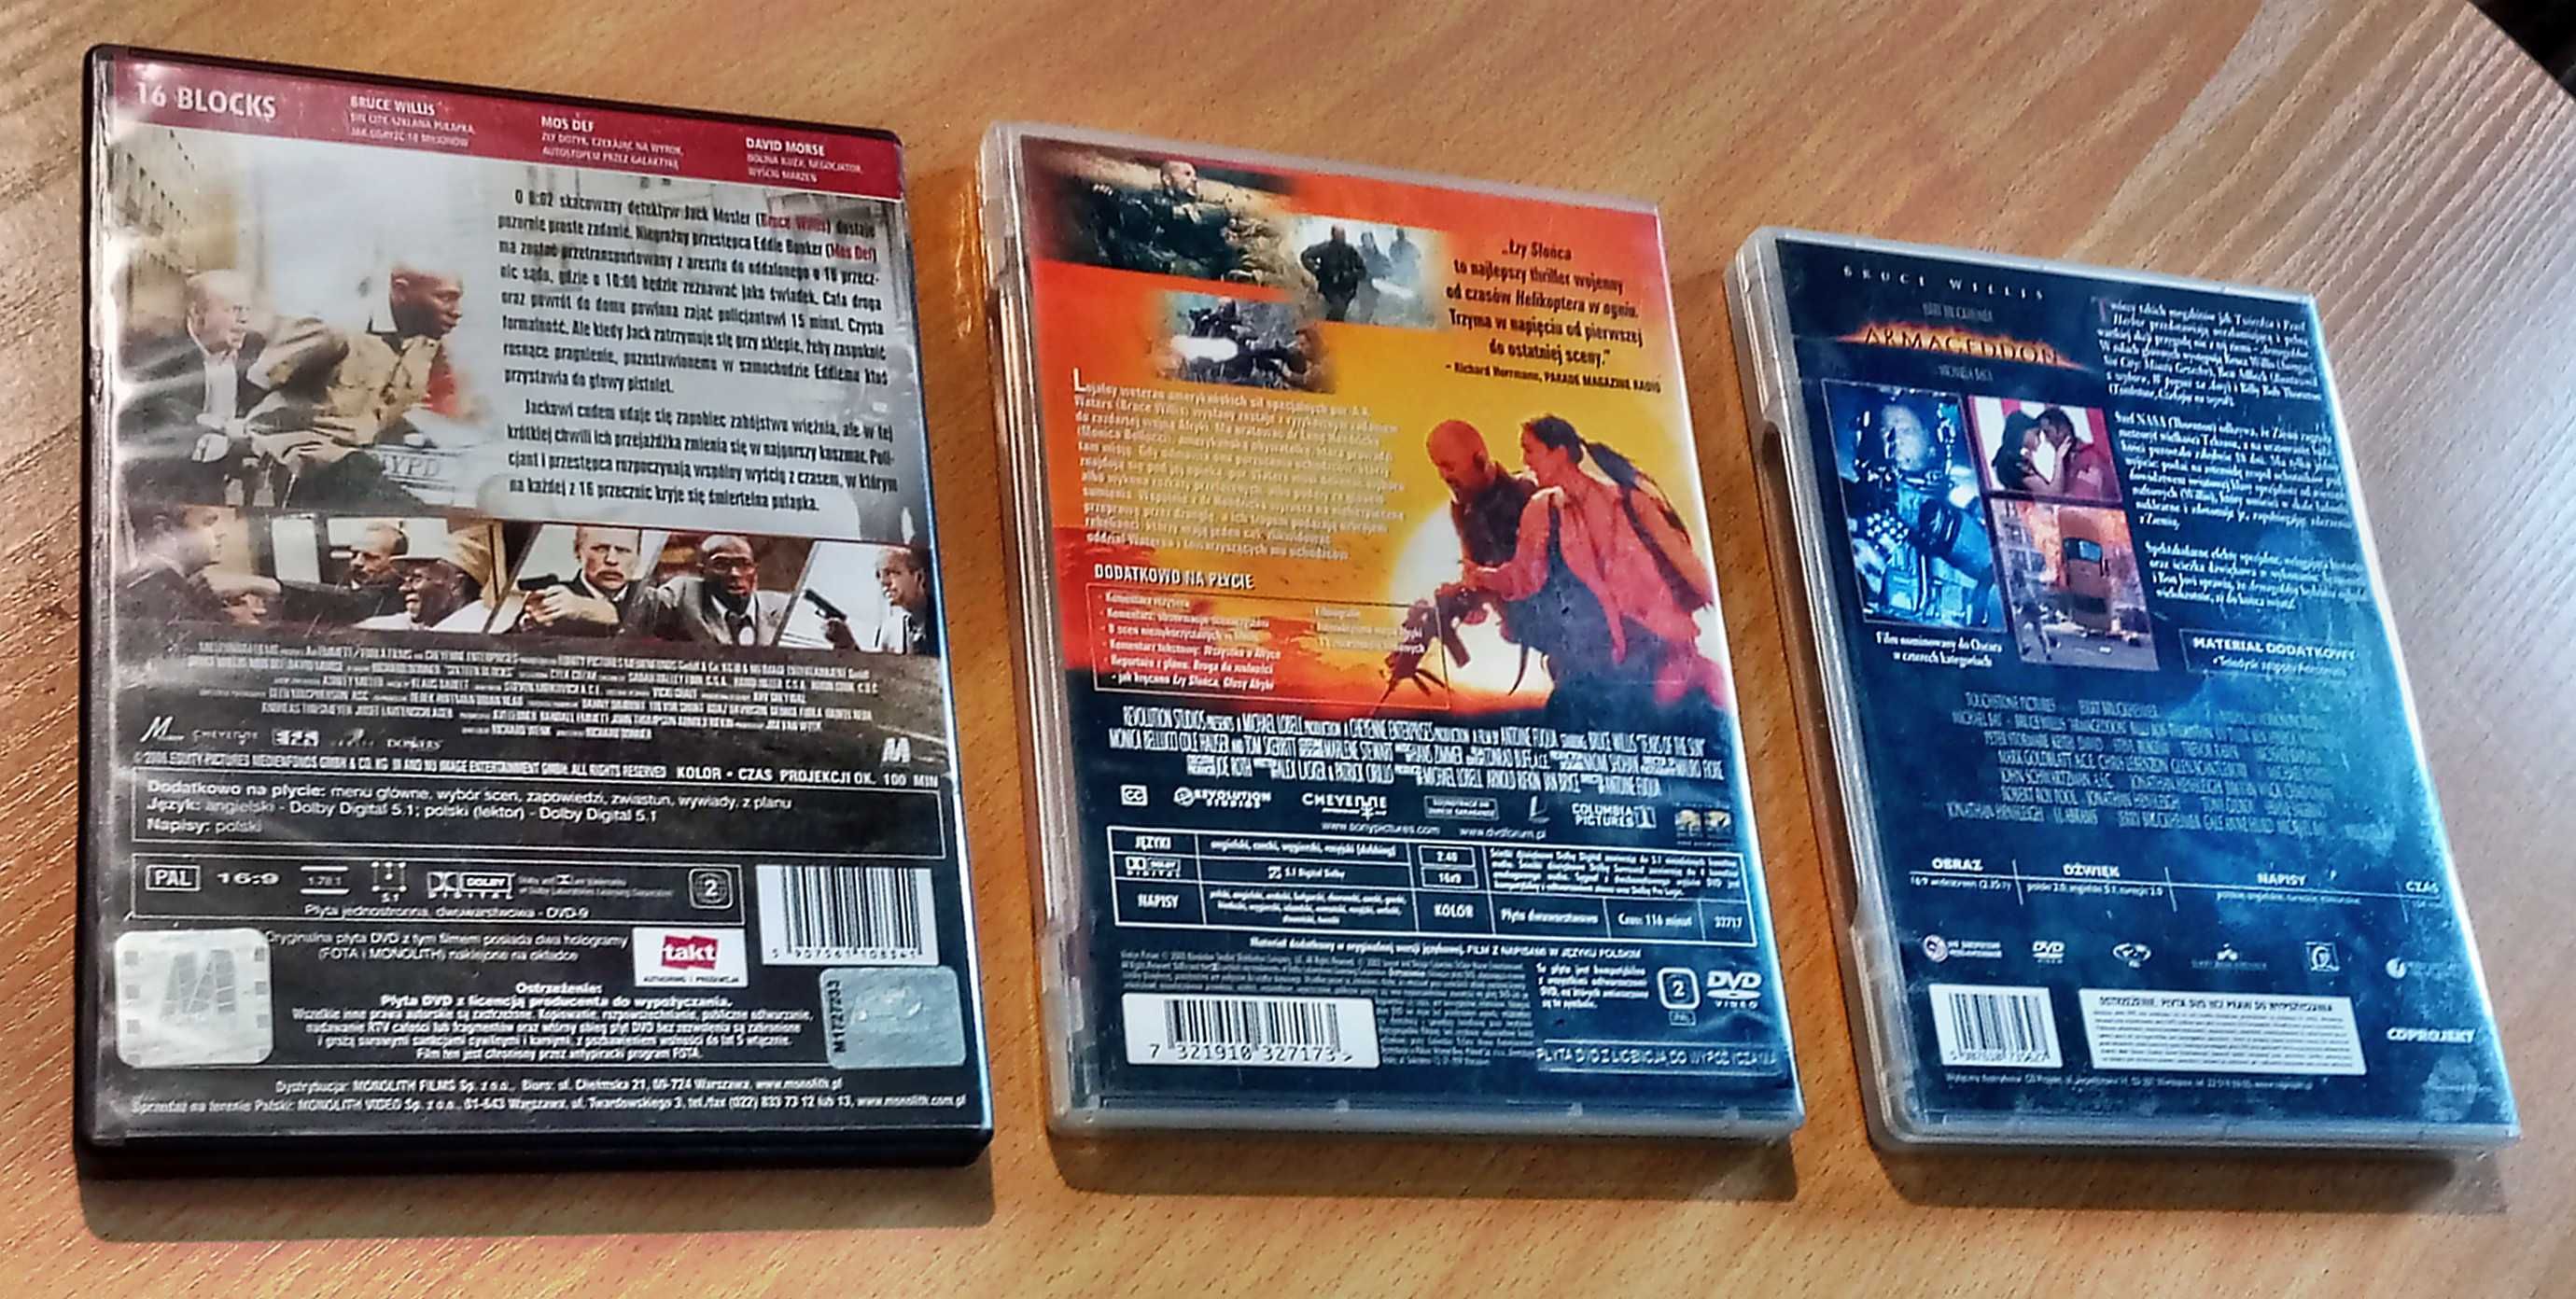 Filmy na dvd z Brucem Willisem